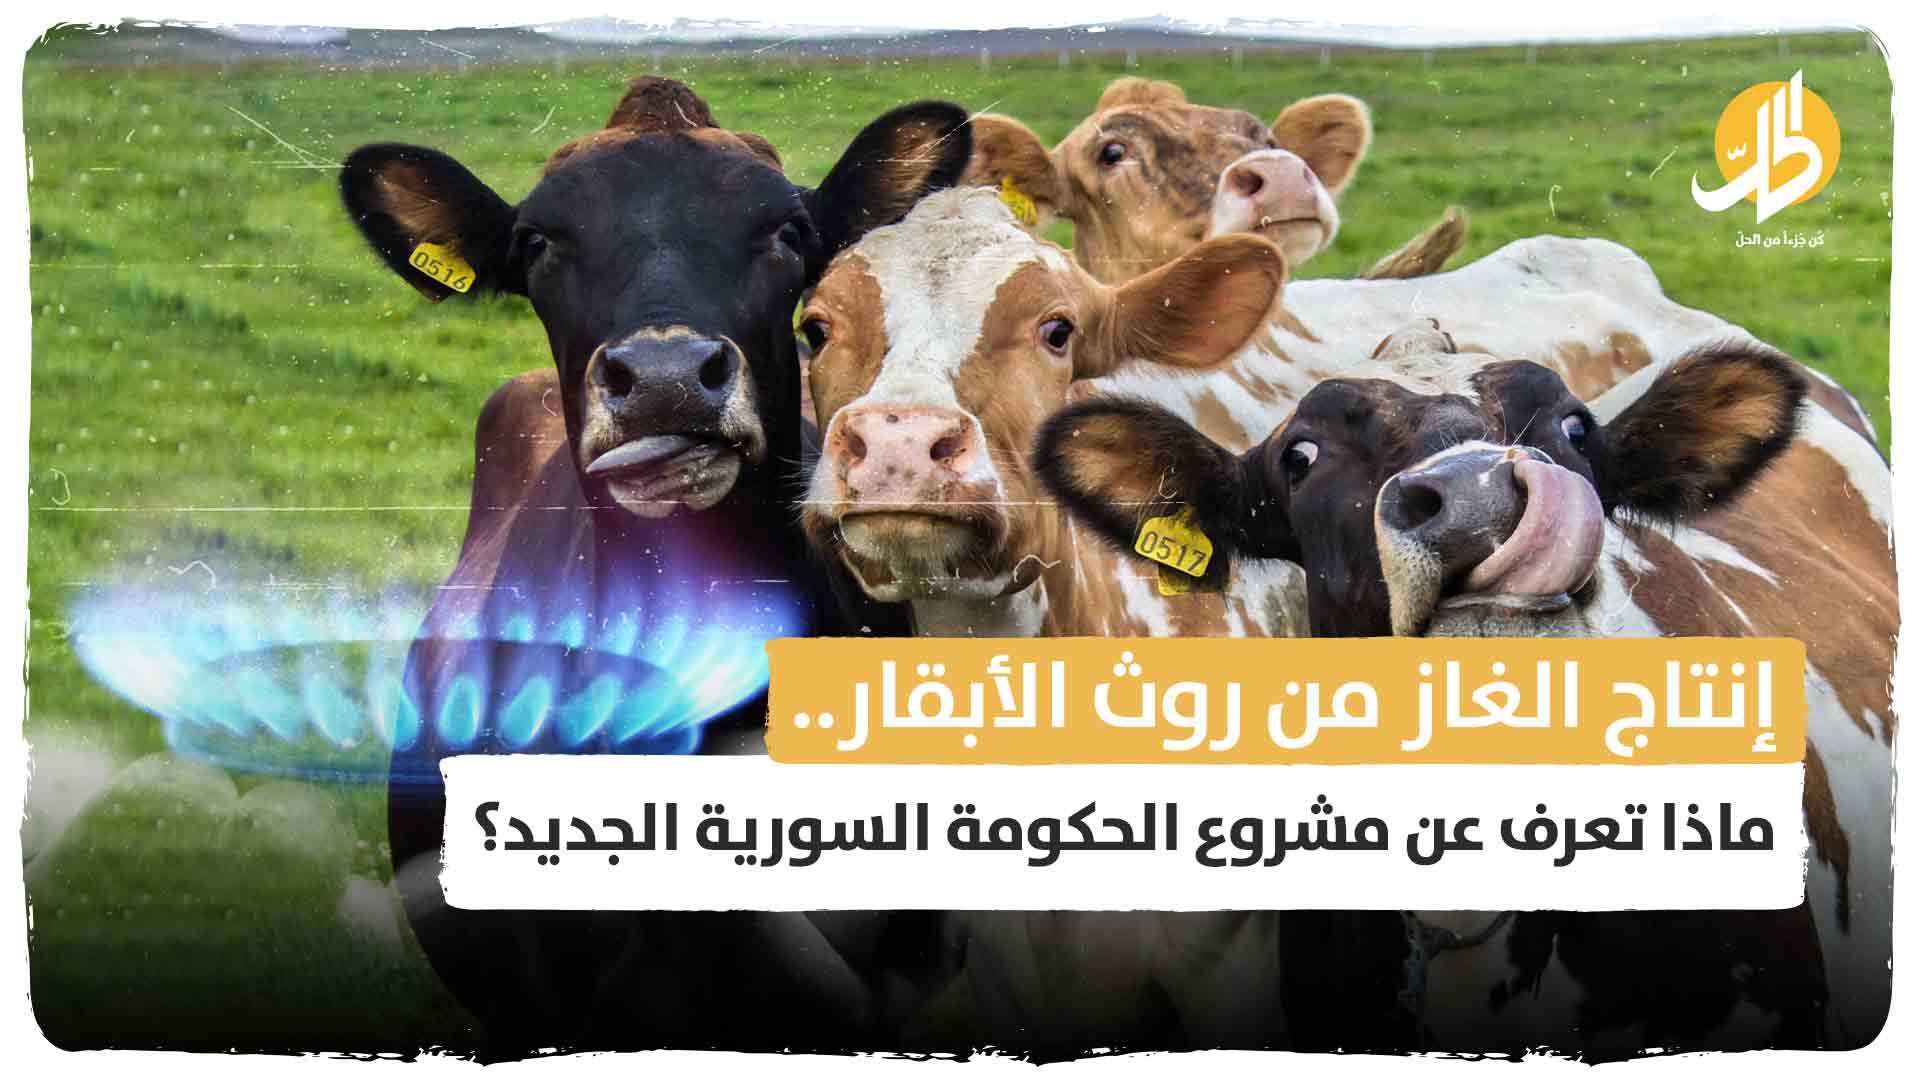 إنتاج الغاز من روث الأبقار.. ماذا تعرف عن مشروع الحكومة السورية الجديد؟